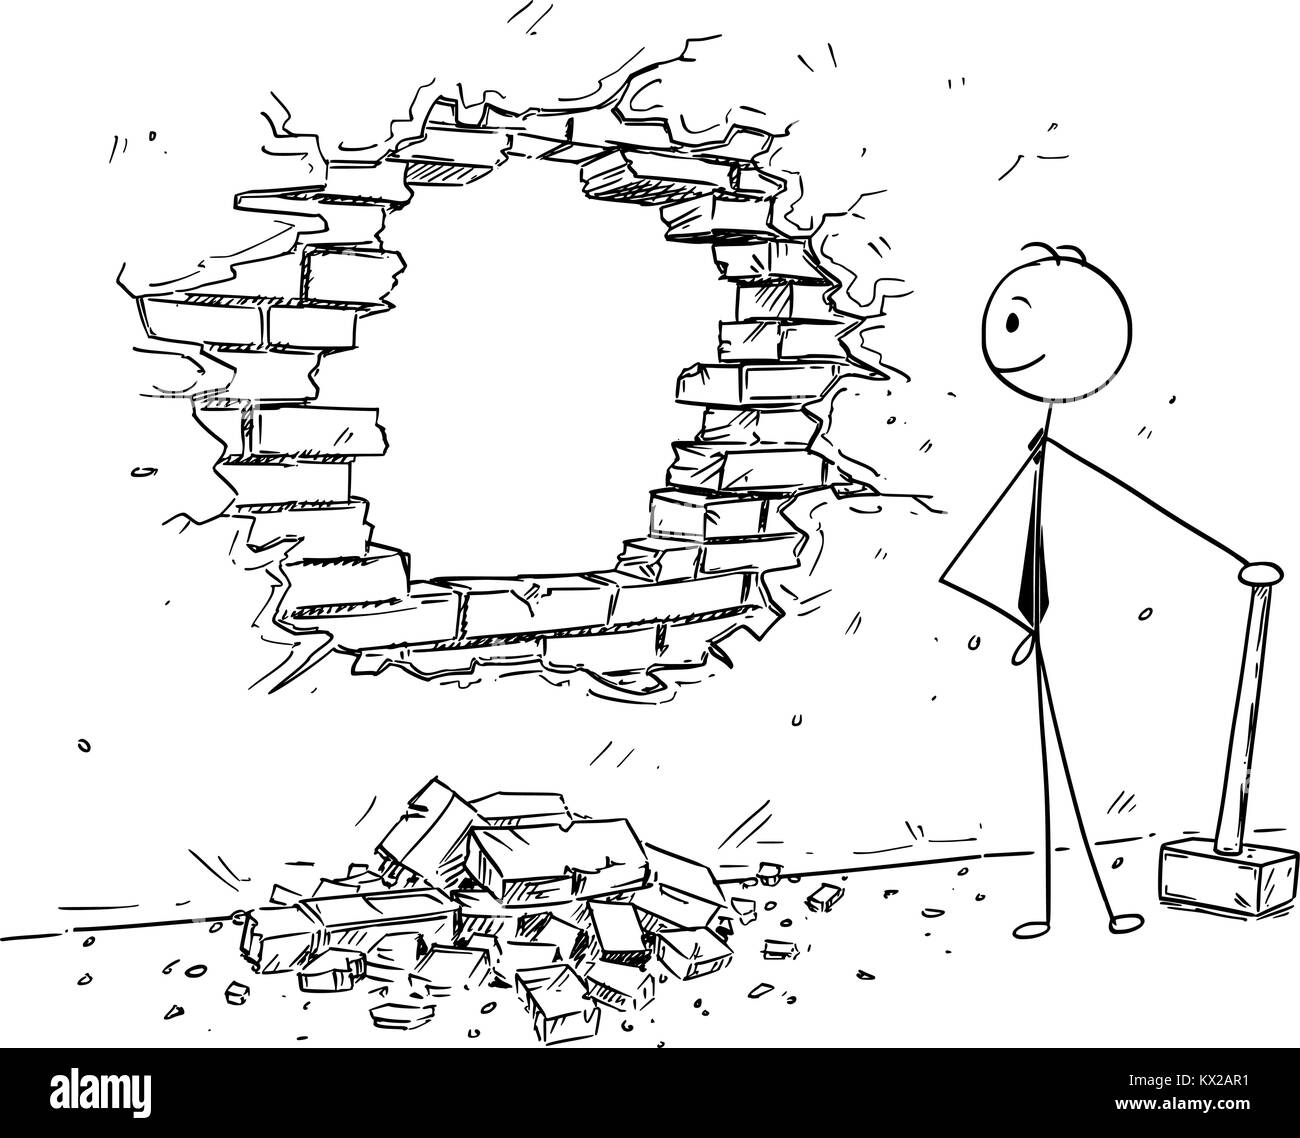 Cartoon stick Mann Zeichnung konzeptionelle Darstellung der Geschäftsmann mit dem Hammer Loch in der Wand zu brechen. Das Konzept von der Beseitigung von Hindernissen und Lo Stock Vektor